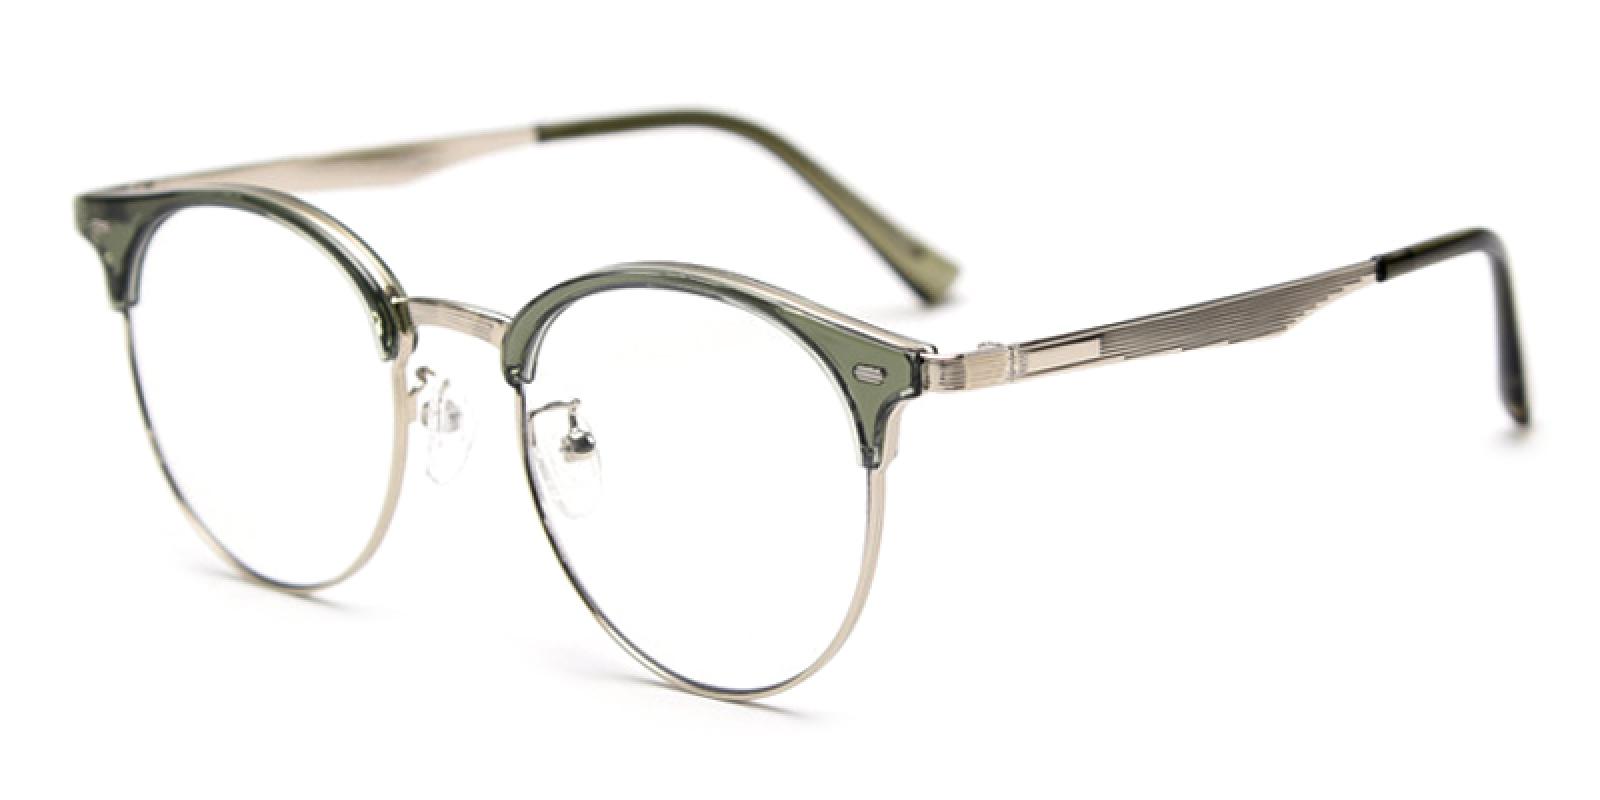 Loma-Green-Browline-TR-Eyeglasses-detail